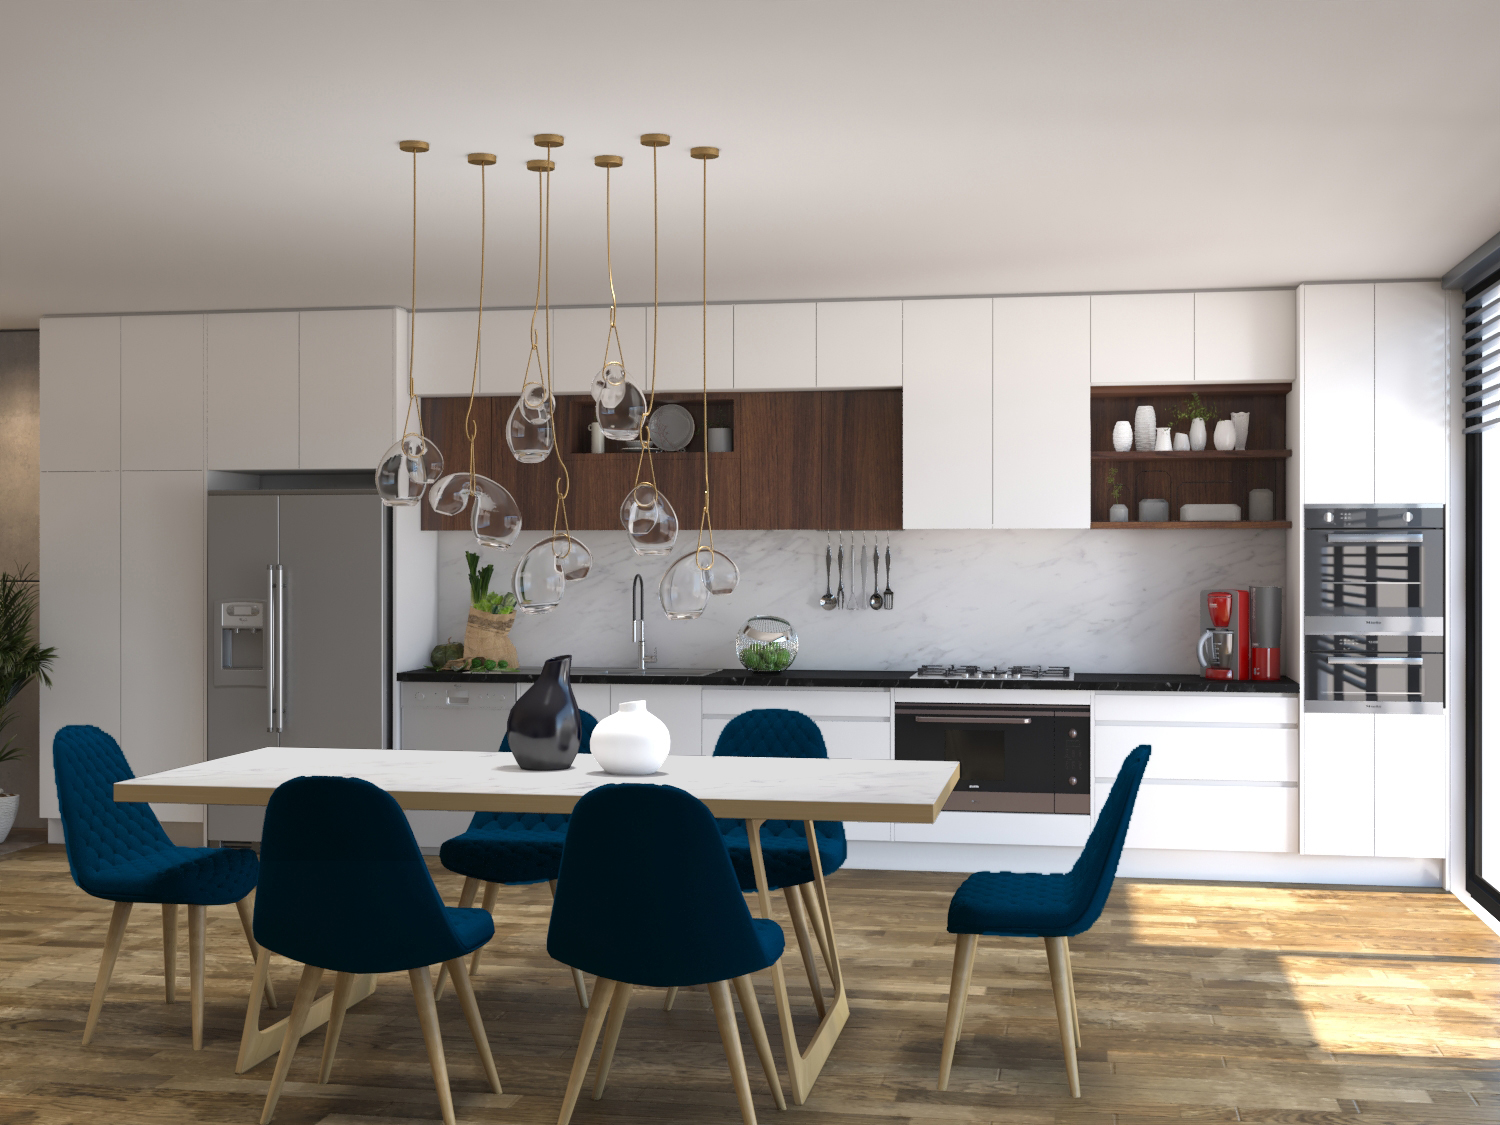 richmond new kitchen design